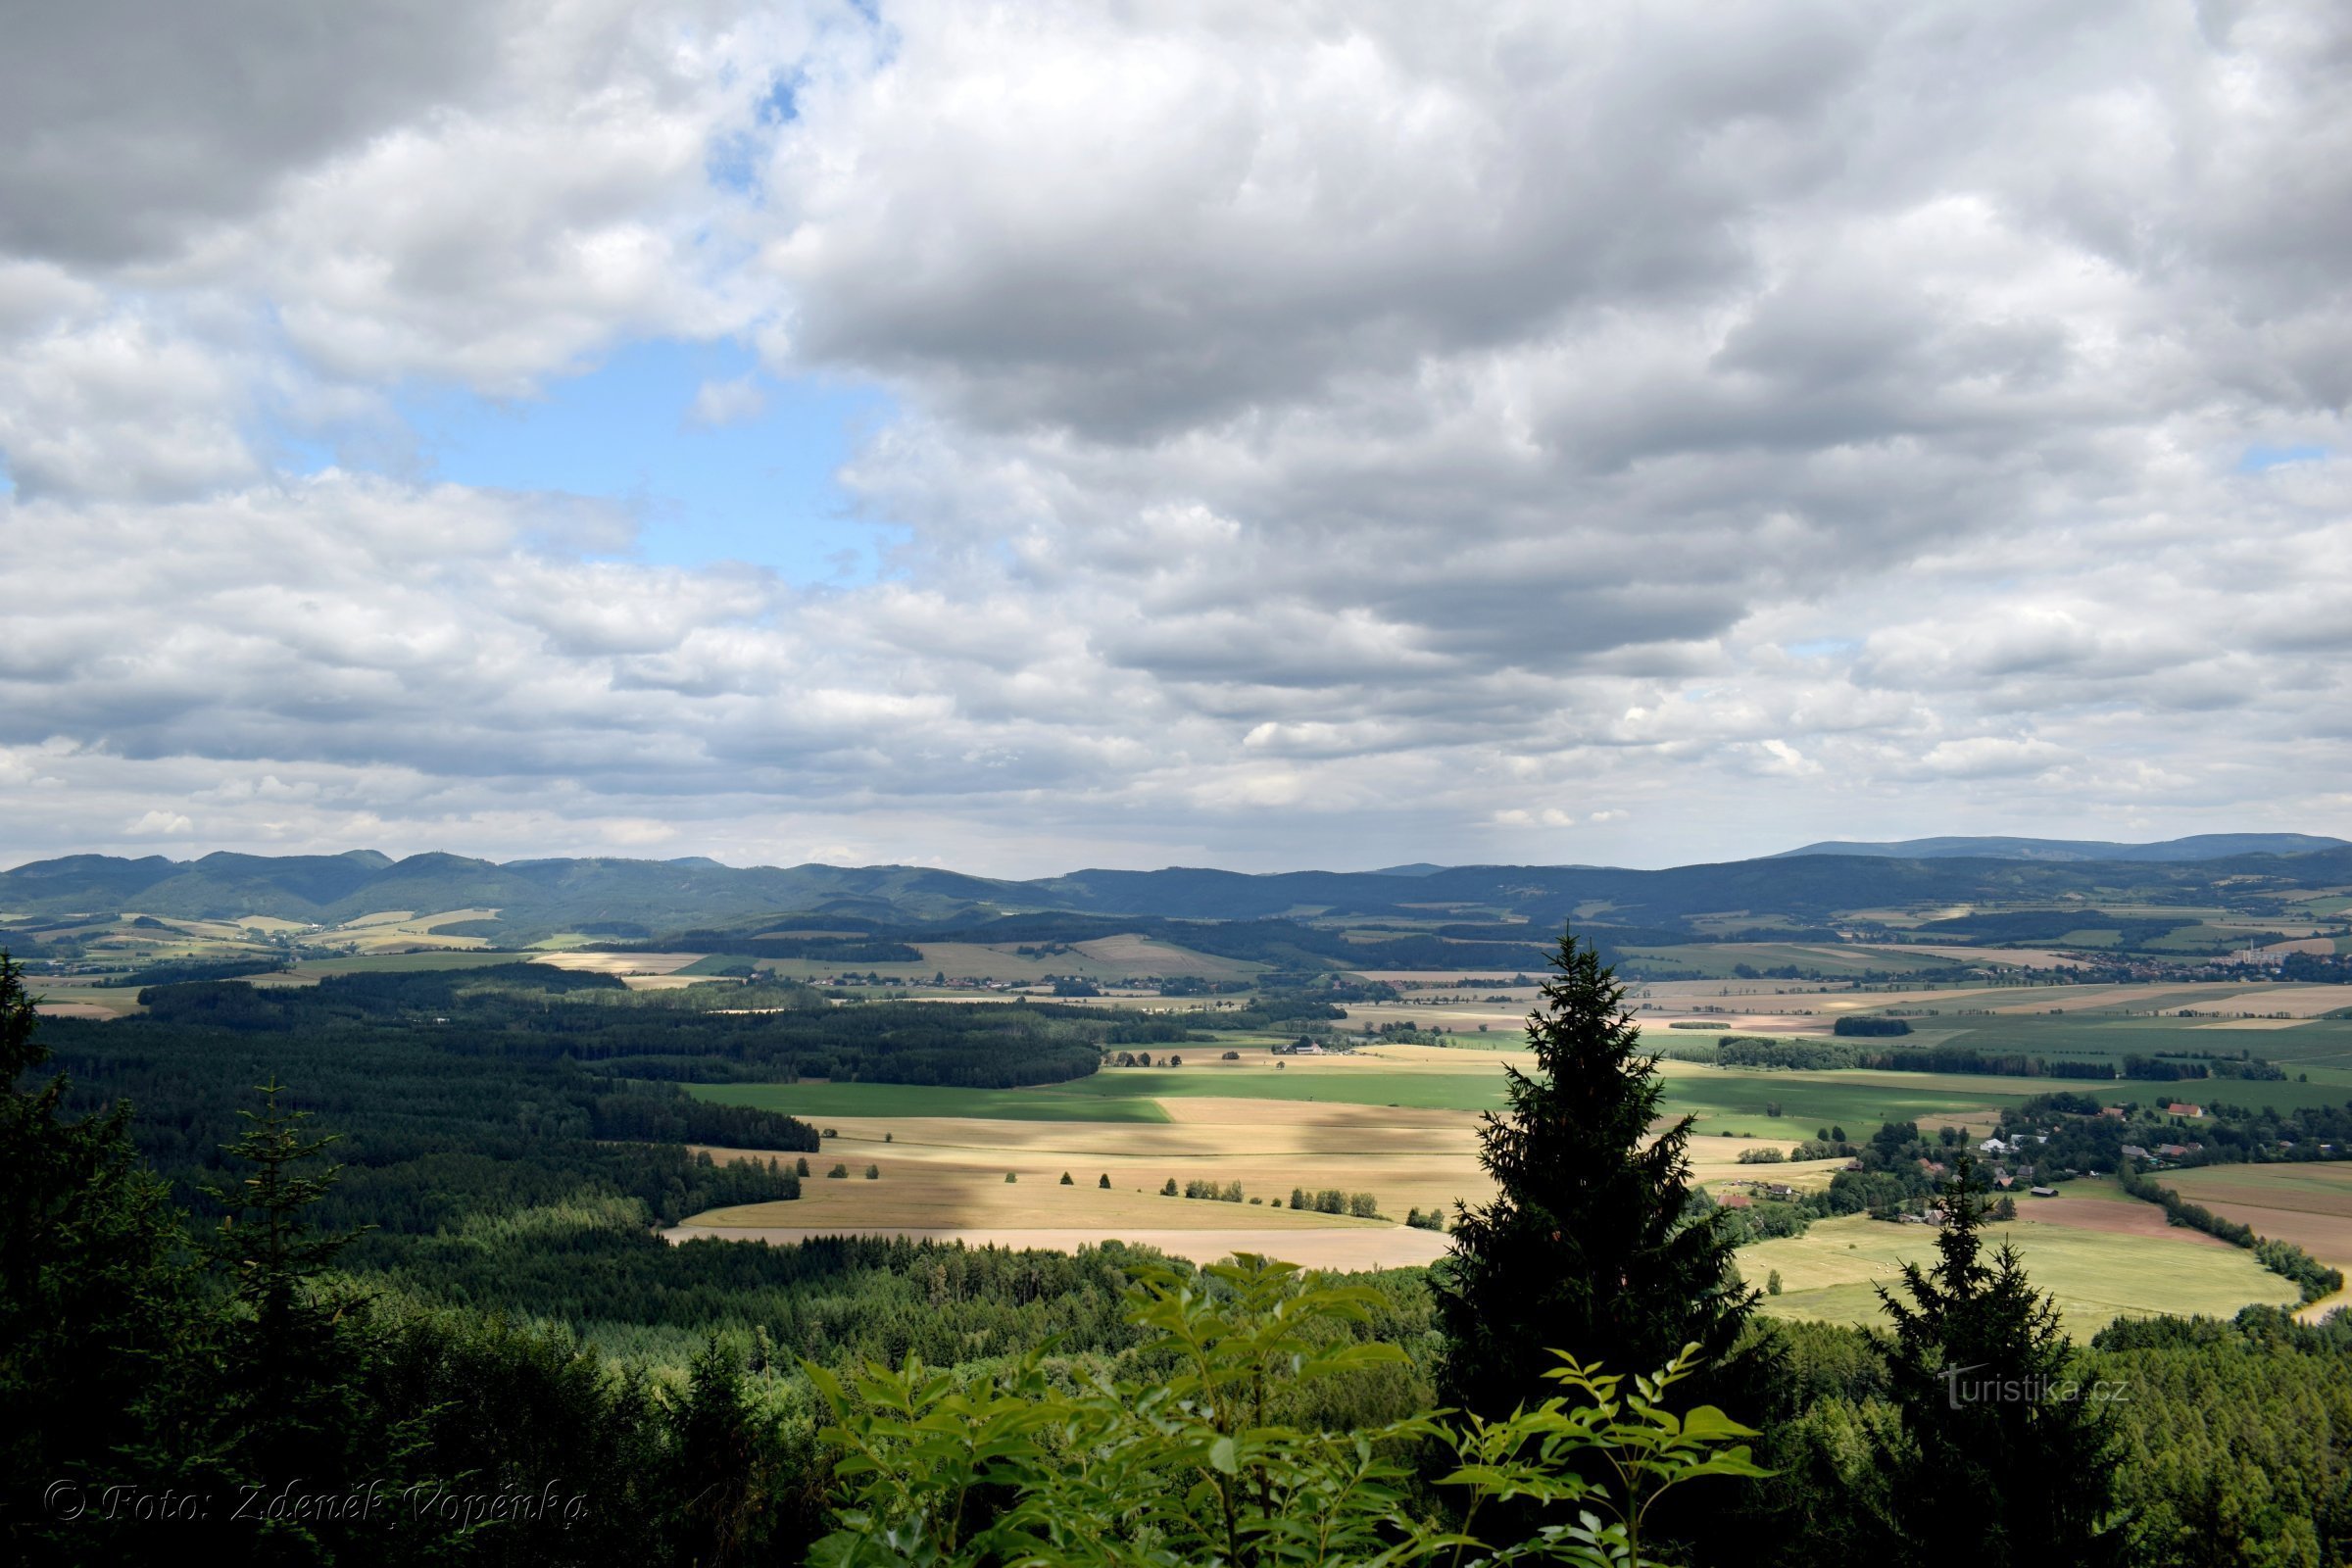 View of Broumovska from Hvězda.